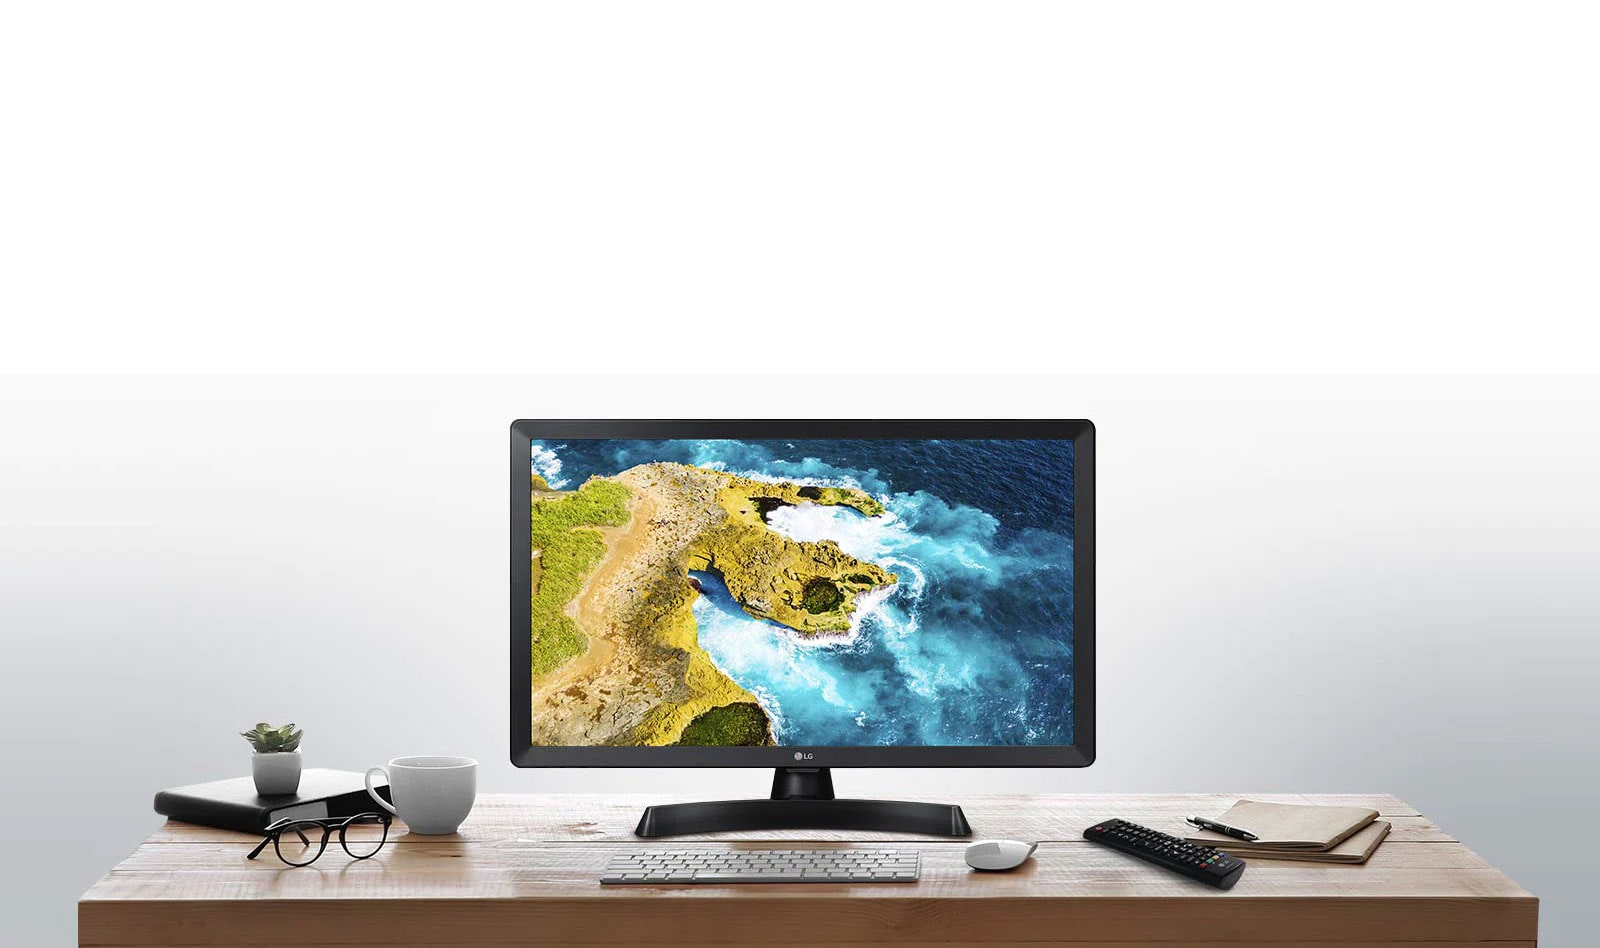 Ar LG LED TV monitoru varat iegūt televizora un monitora apvienojumu